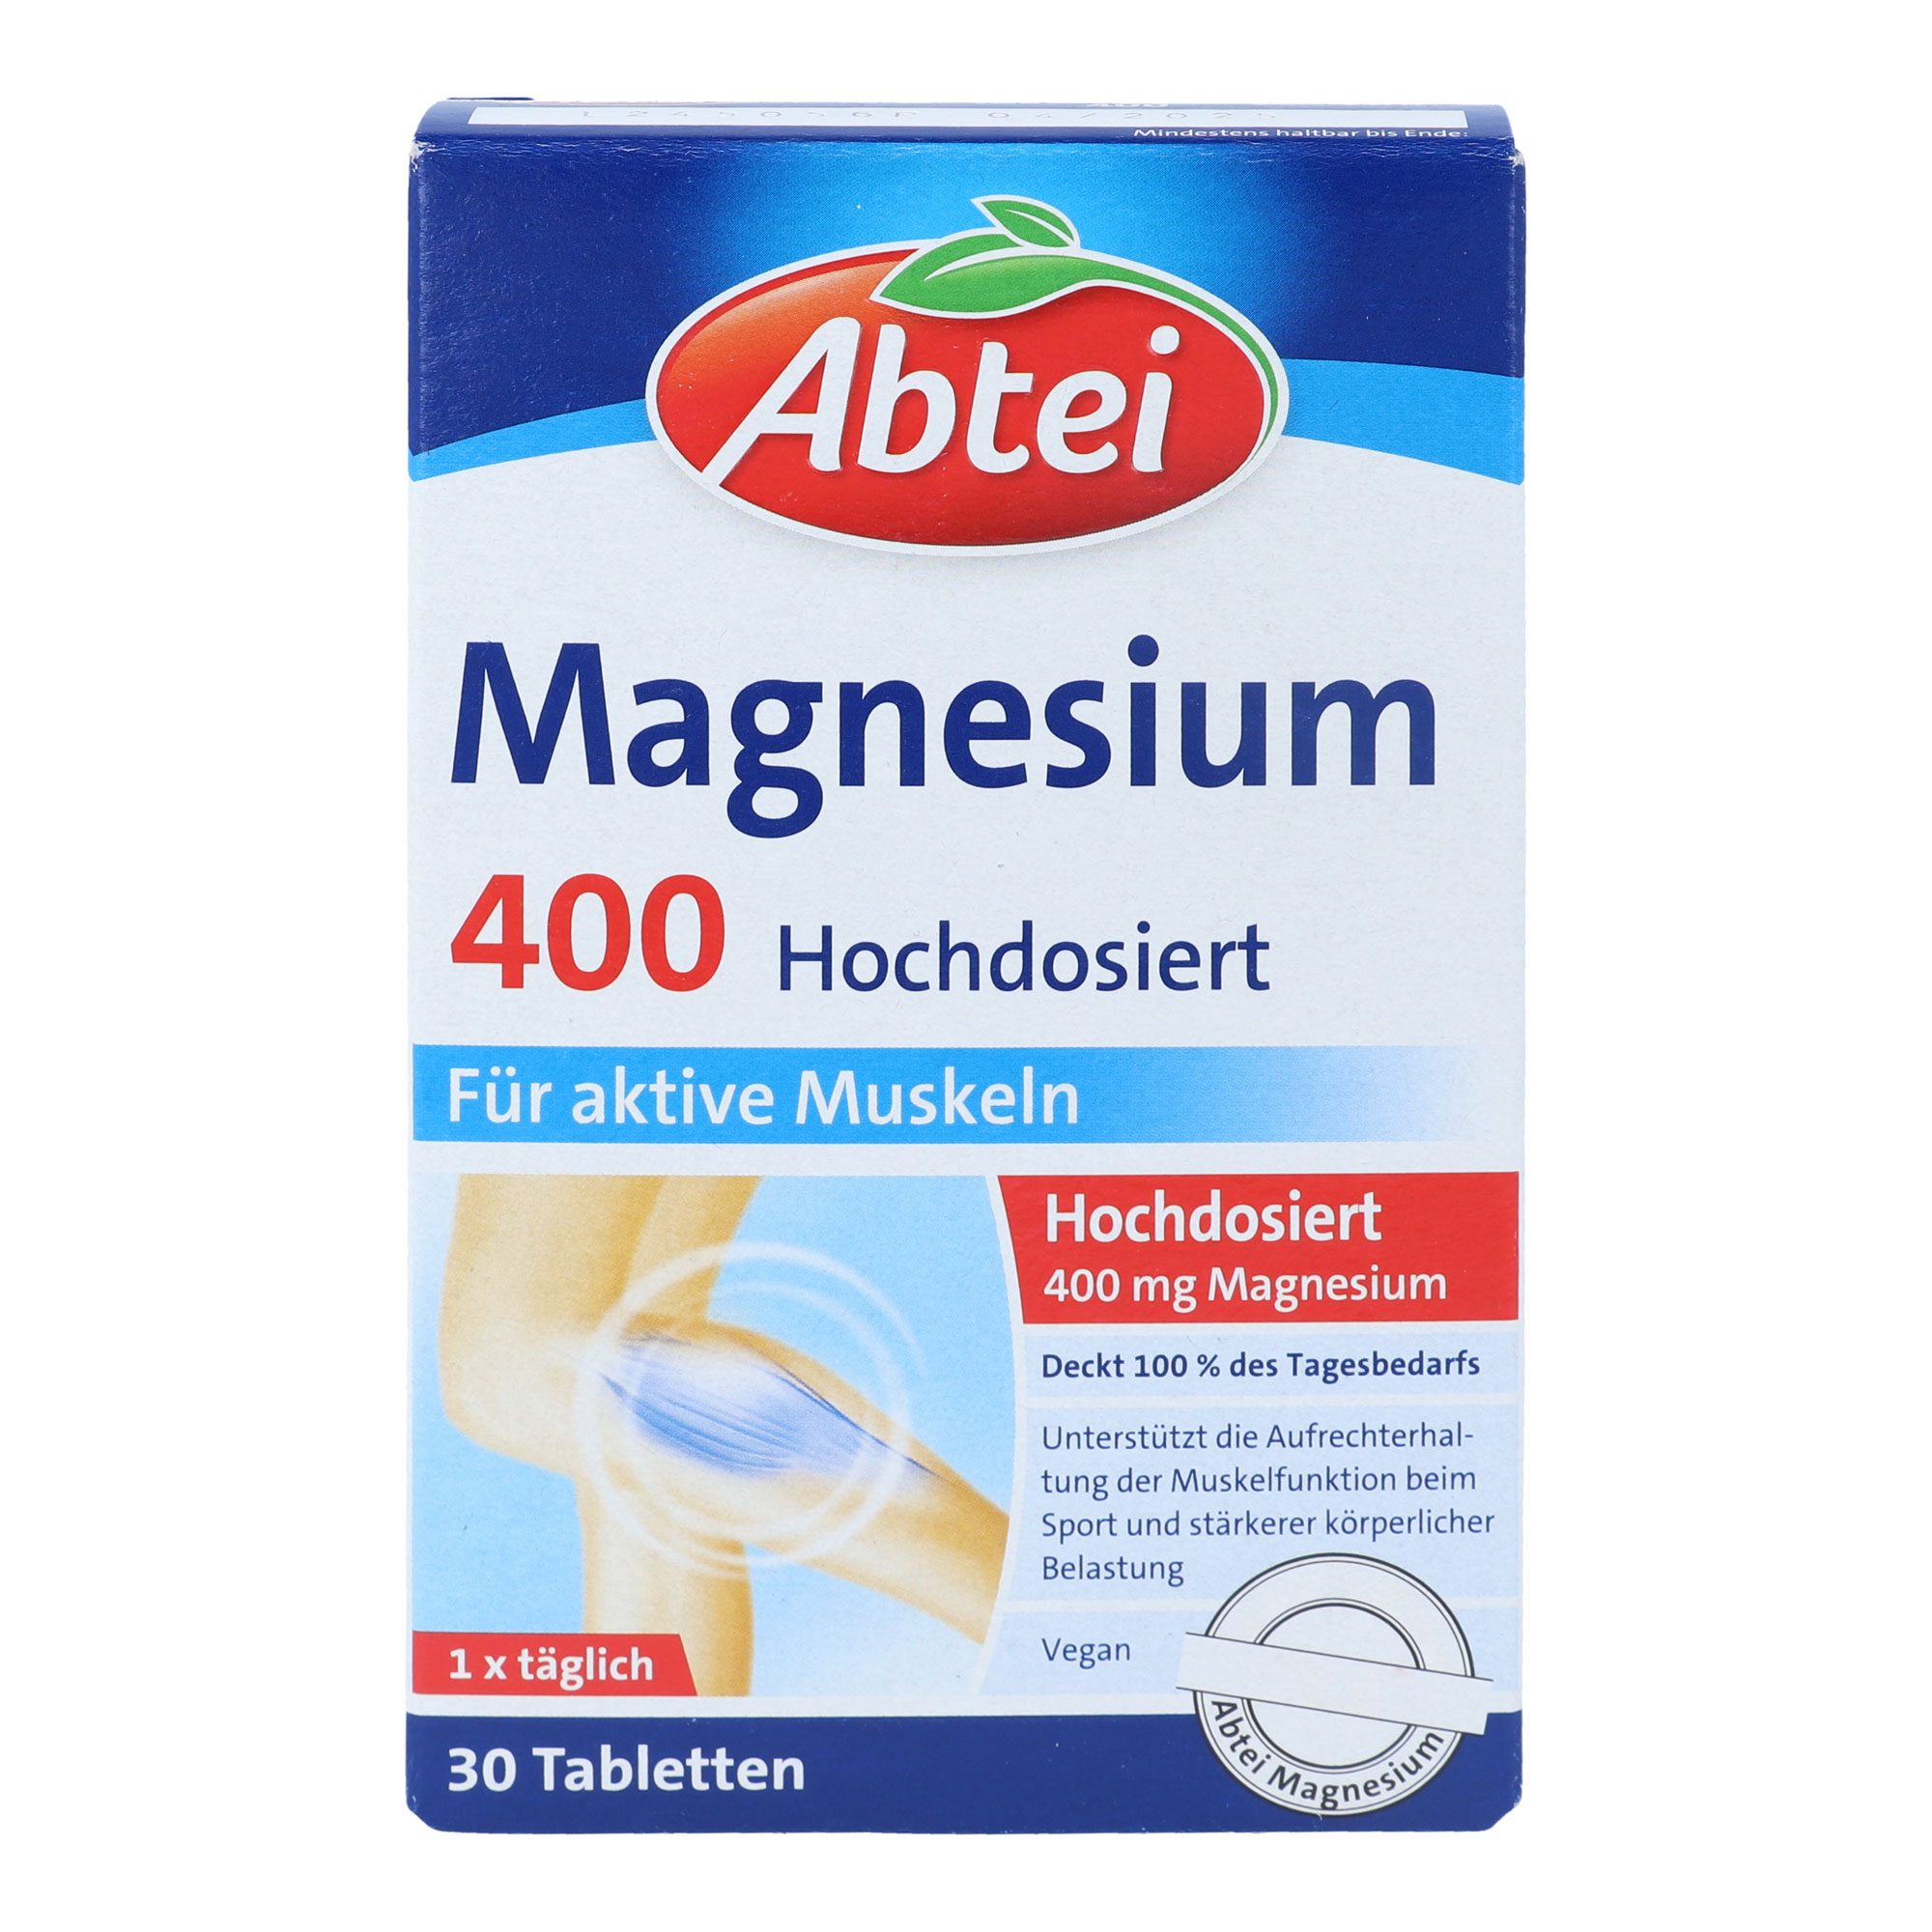 Nahrungsergänzungsmittel mit hochdosiertem Magnesium. Vegane Tabletten.